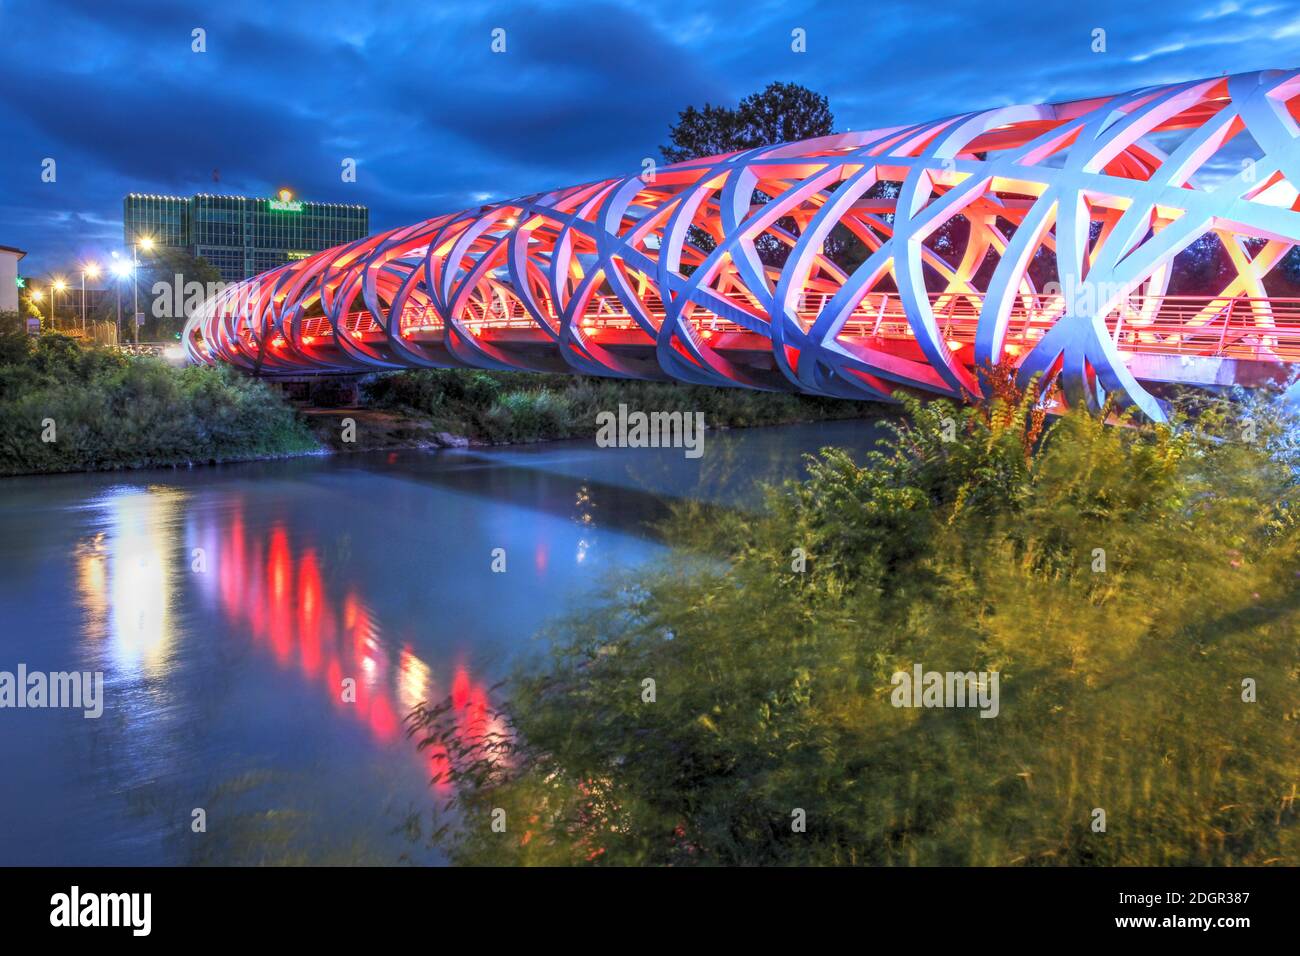 Genf, Schweiz - 17. Juli 2020 - Nachtszene mit der Hans-Wilsdorf-Brücke über die Arve, die das Plainpalais und Les Acacias distric verbindet Stockfoto